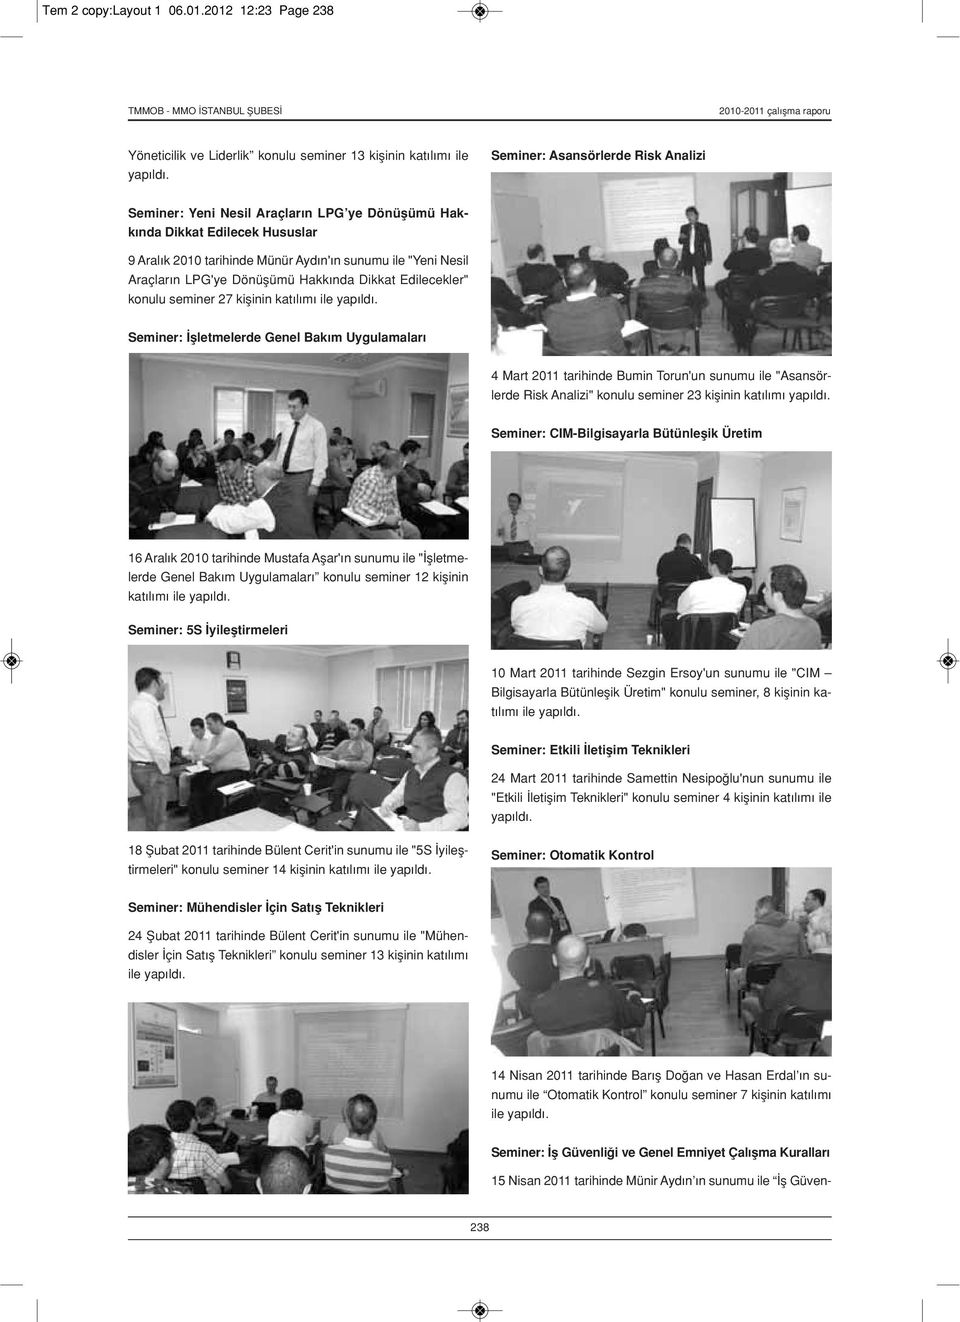 Dönüşümü Hakkında Dikkat Edilecekler" konulu seminer 27 kişinin katılımı Seminer: İşletmelerde Genel Bakım Uygulamaları 4 Mart 2011 tarihinde Bumin Torun'un sunumu ile "Asansörlerde Risk Analizi"